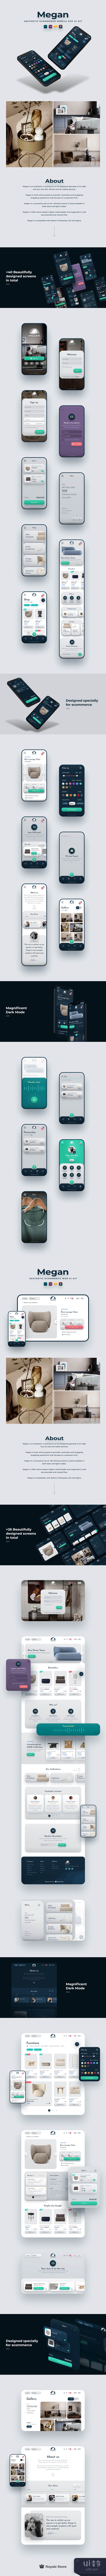 梅根电商App设计插图